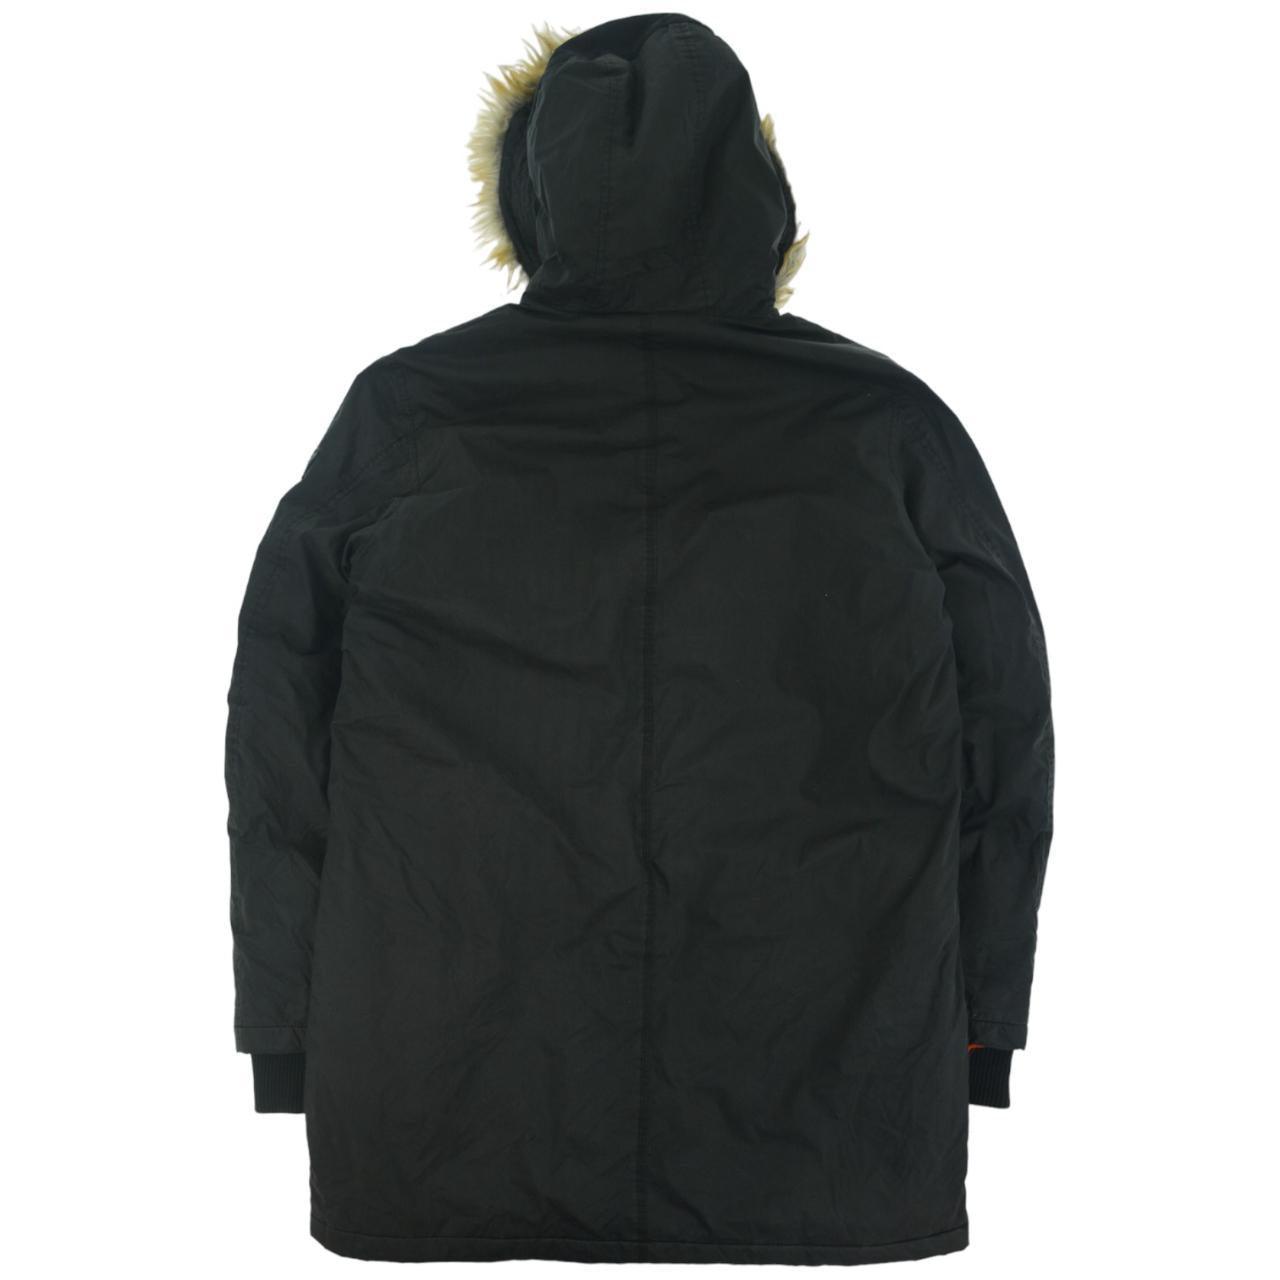 Vintage Diesel Fur Hooded Jacket Size L - Known Source